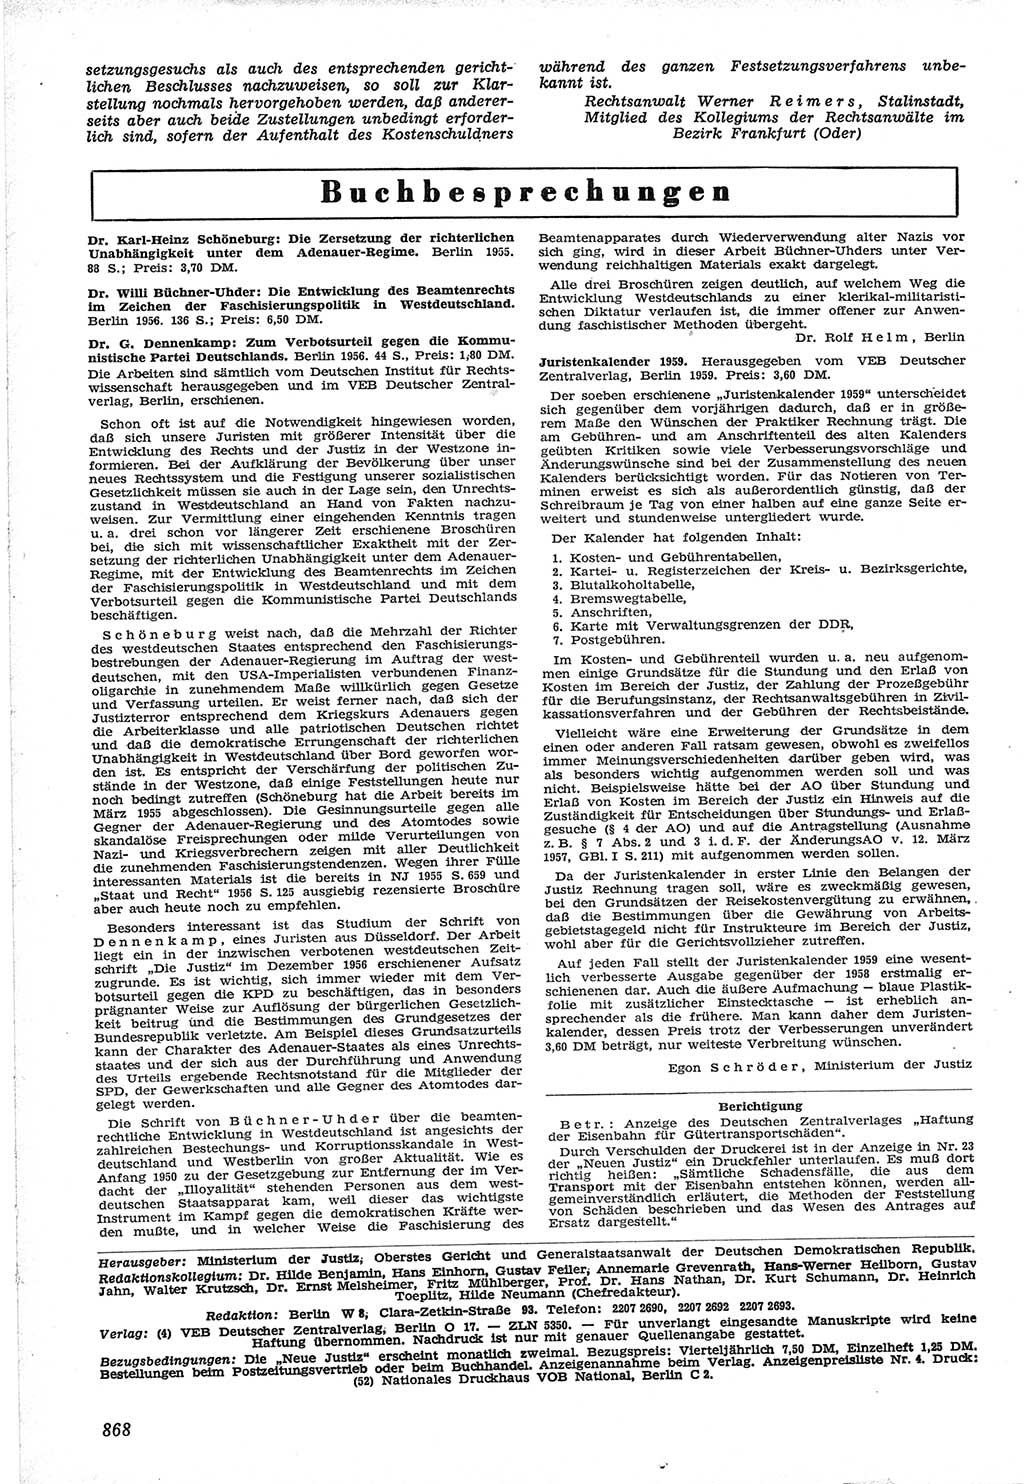 Neue Justiz (NJ), Zeitschrift für Recht und Rechtswissenschaft [Deutsche Demokratische Republik (DDR)], 12. Jahrgang 1958, Seite 868 (NJ DDR 1958, S. 868)